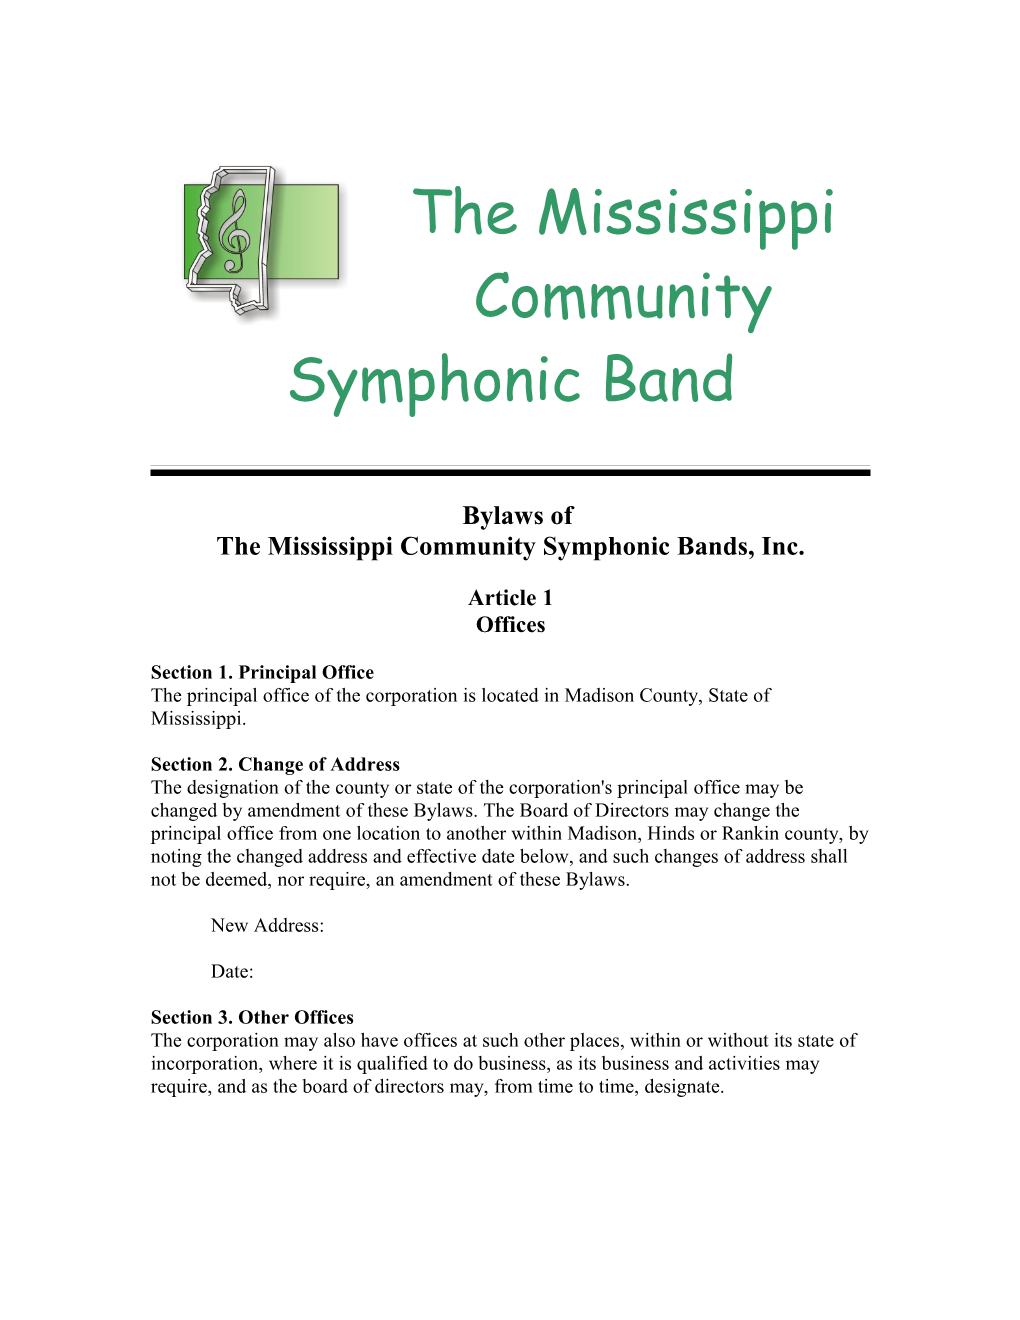 Mississippi Community Symphonic Bands, Inc